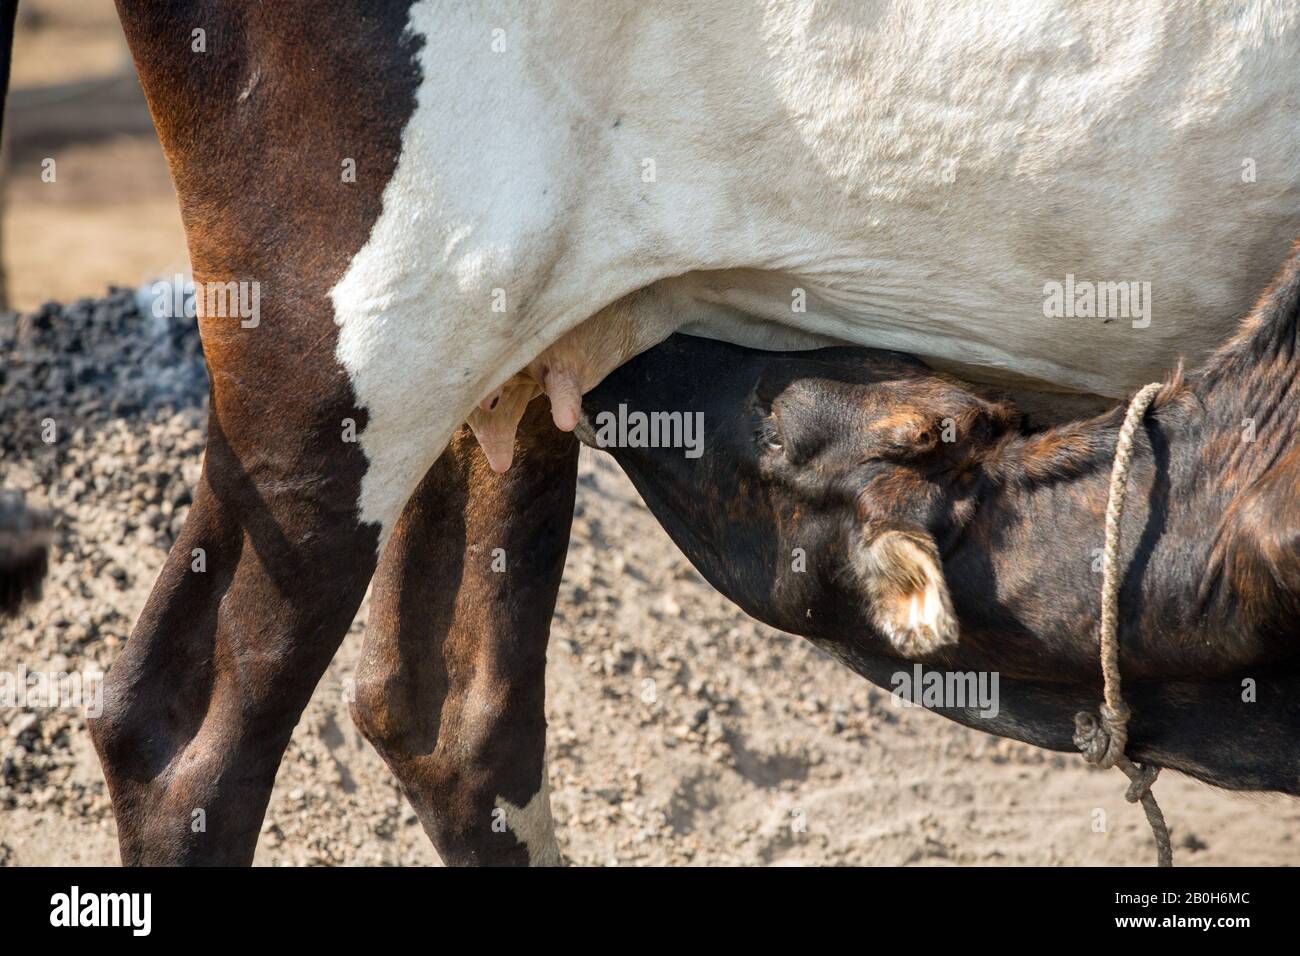 31.10.2019, Belinkum, Gambela, Ethiopie - Calf suce sur le pis d'une vache. Éleveur de bovins du groupe ethnique éthiopien Nuer. Documentation du projet Banque D'Images